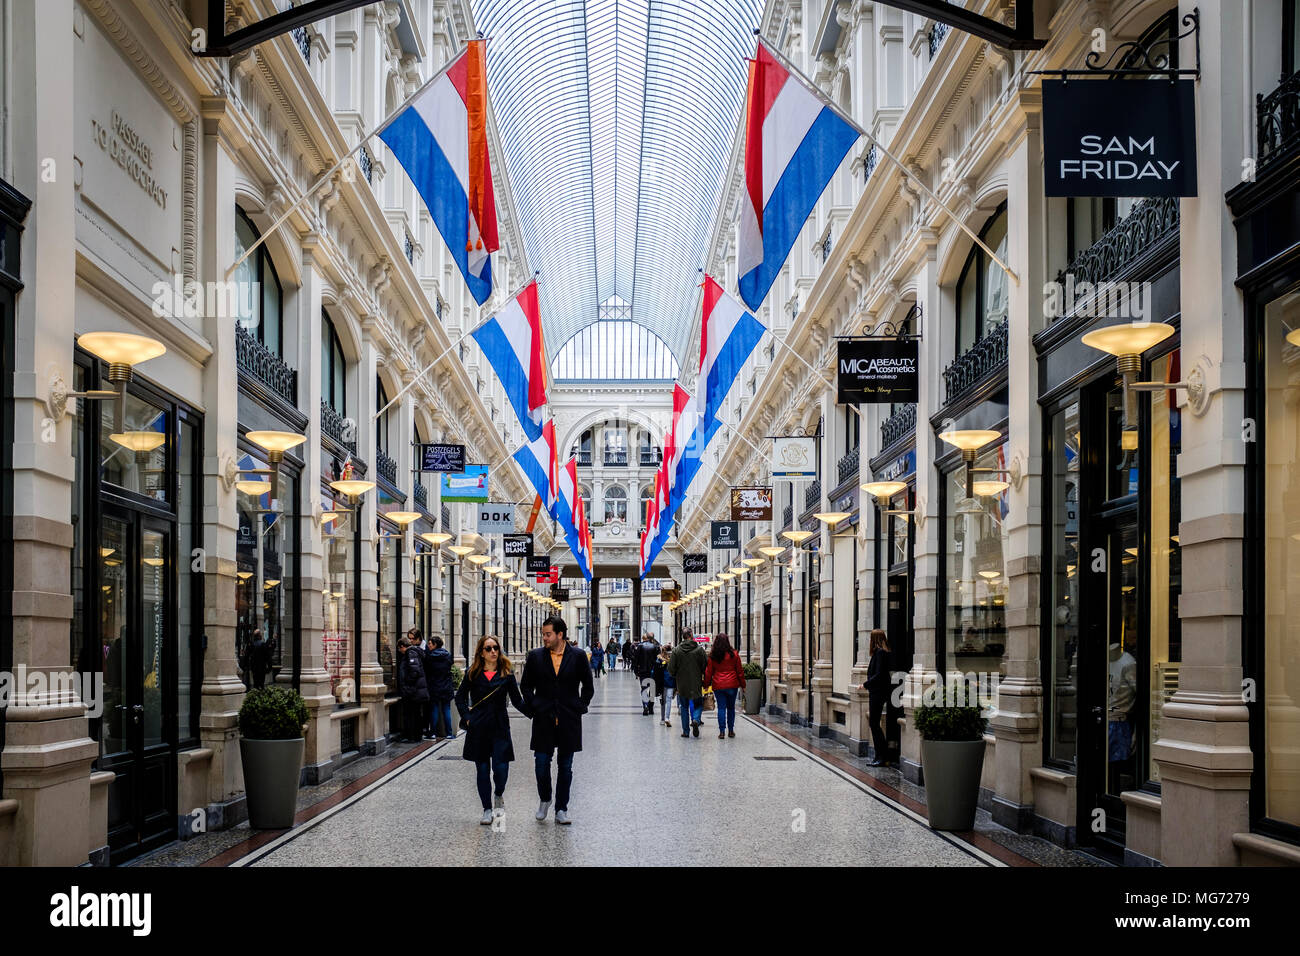 Banderas nacionales, visto en el centro comercial pasaje en King's Day en la ciudad de La Haya, en Holanda. Koningsdag o King's es un día de fiesta nacional en el Reino de los Países Bajos. Celebra el 27 de abril, la fecha se conmemora el nacimiento del Rey Willem-Alexander. El pasaje en La Haya es el más antiguo centro comercial existente en los Países Bajos. Foto de stock